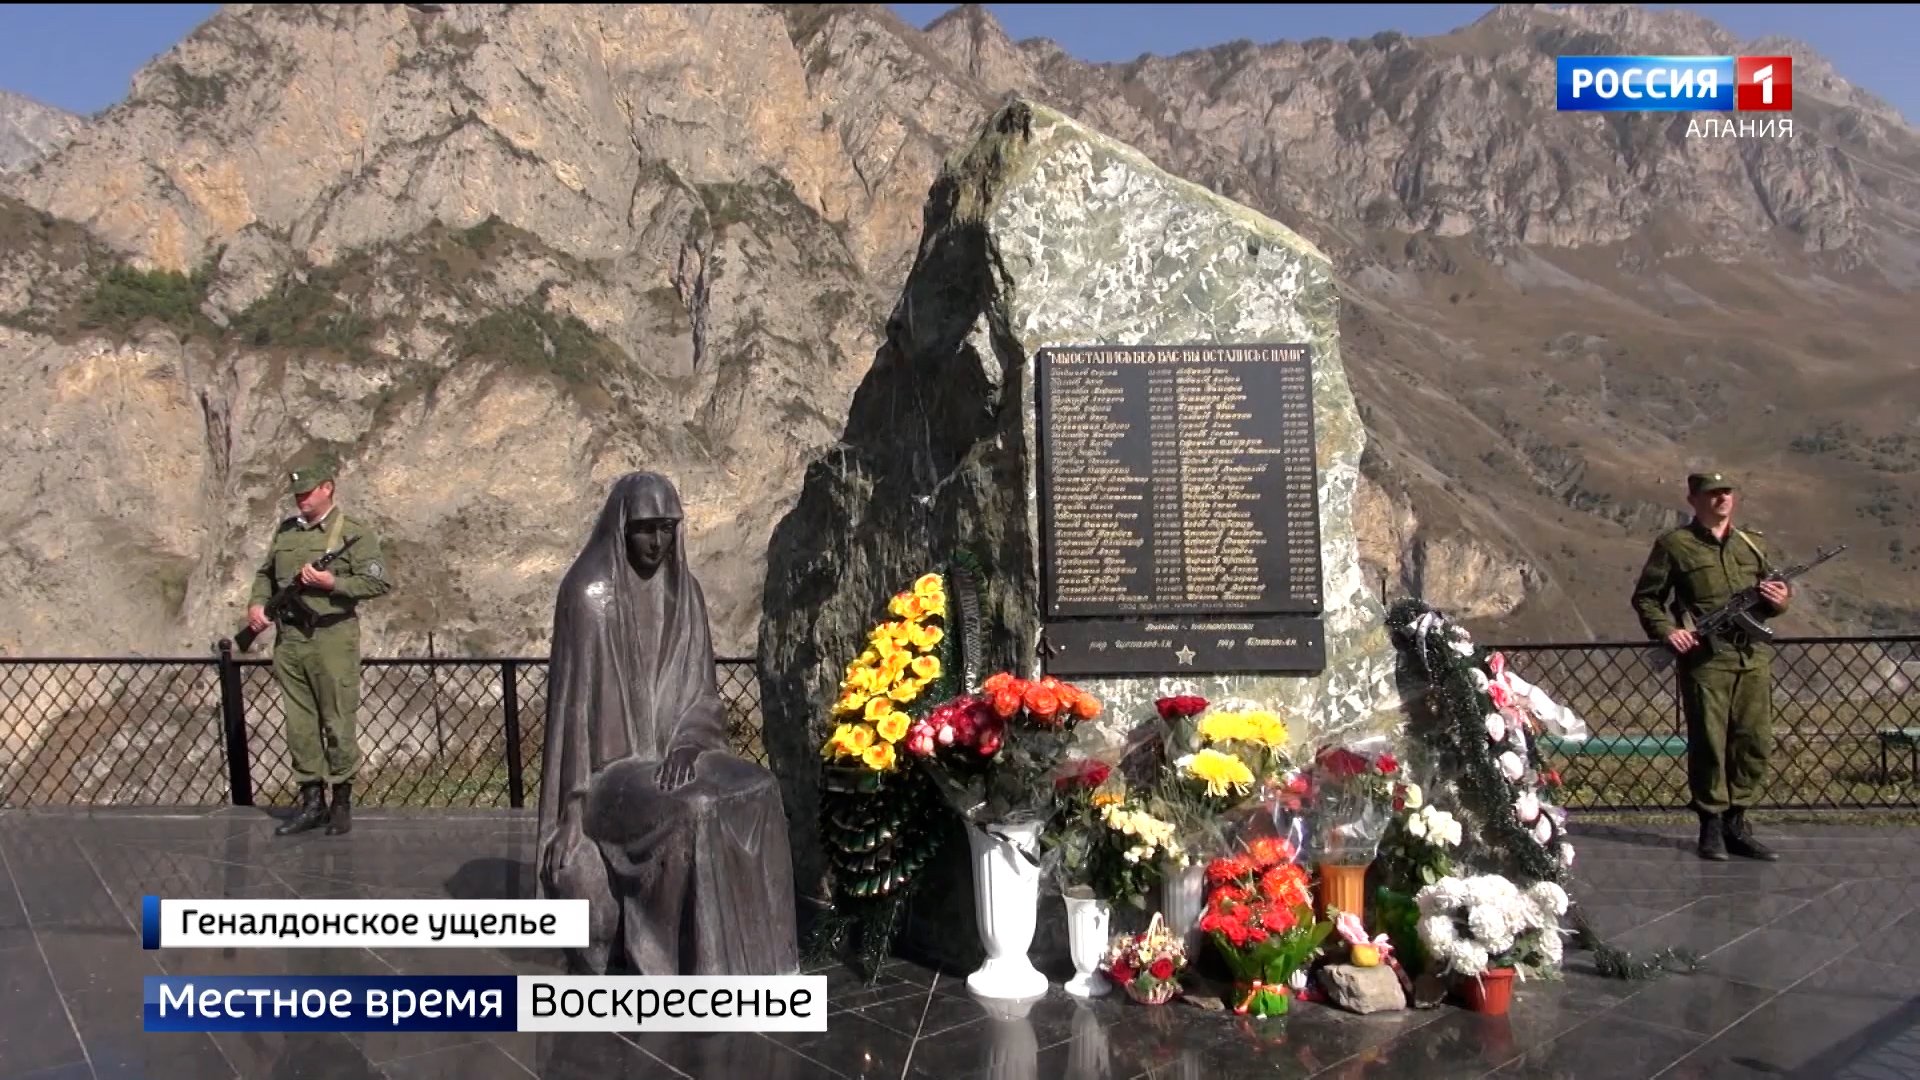 Сергей бодров памятник на кавказе фото